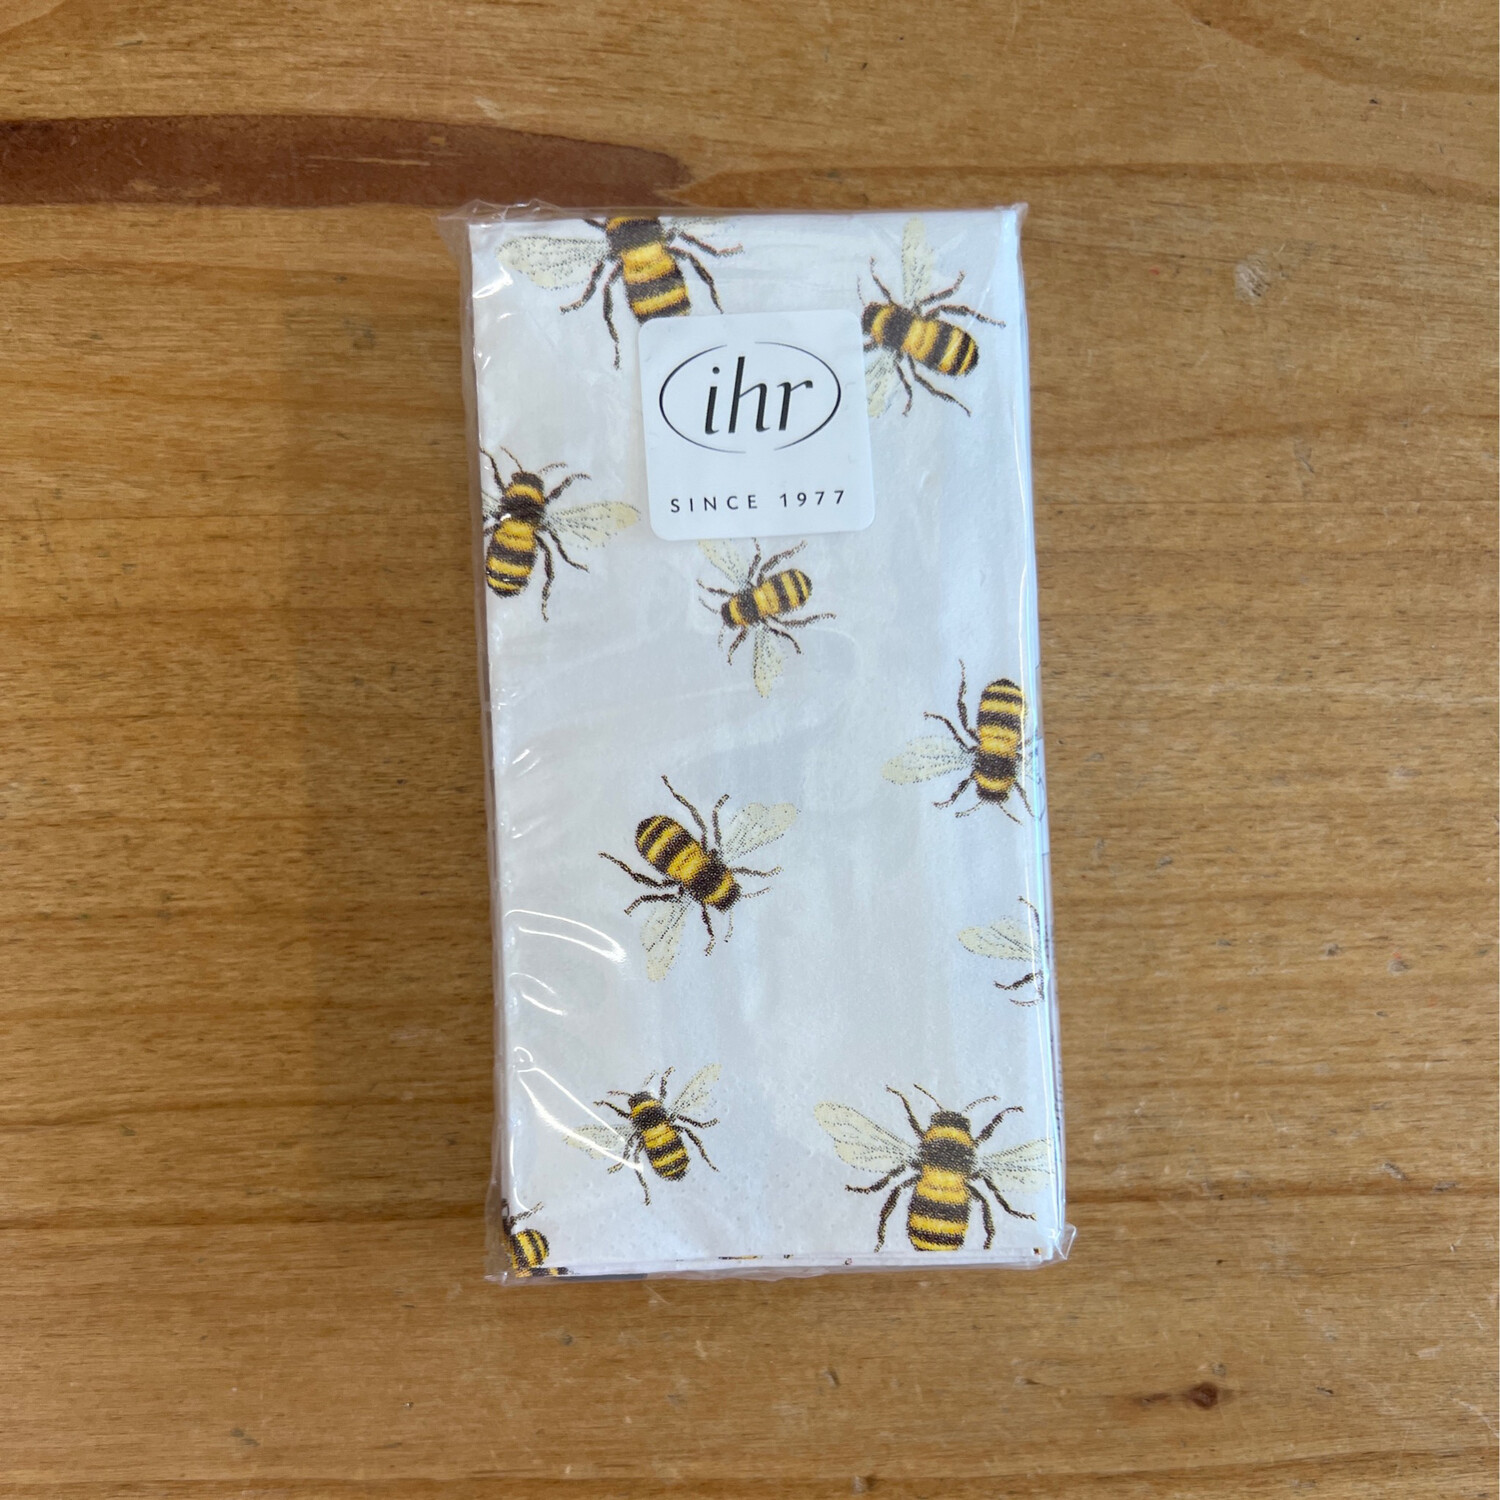 Bees Pocket Tissue